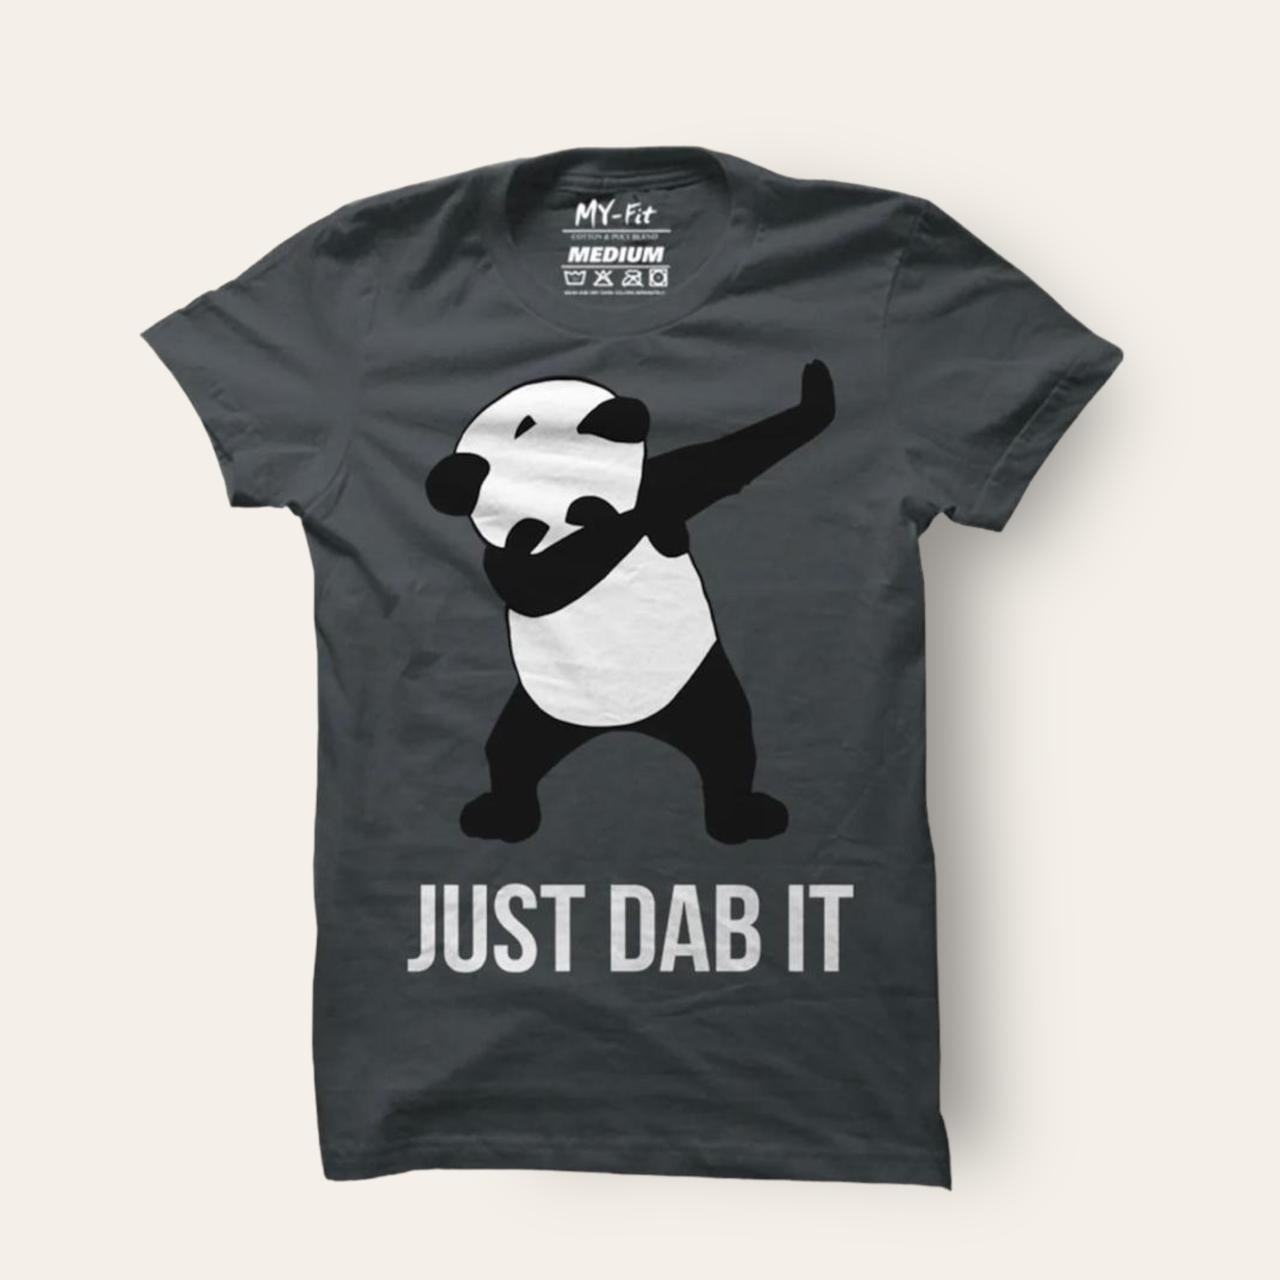 Just Dab It Slogan T Shirt